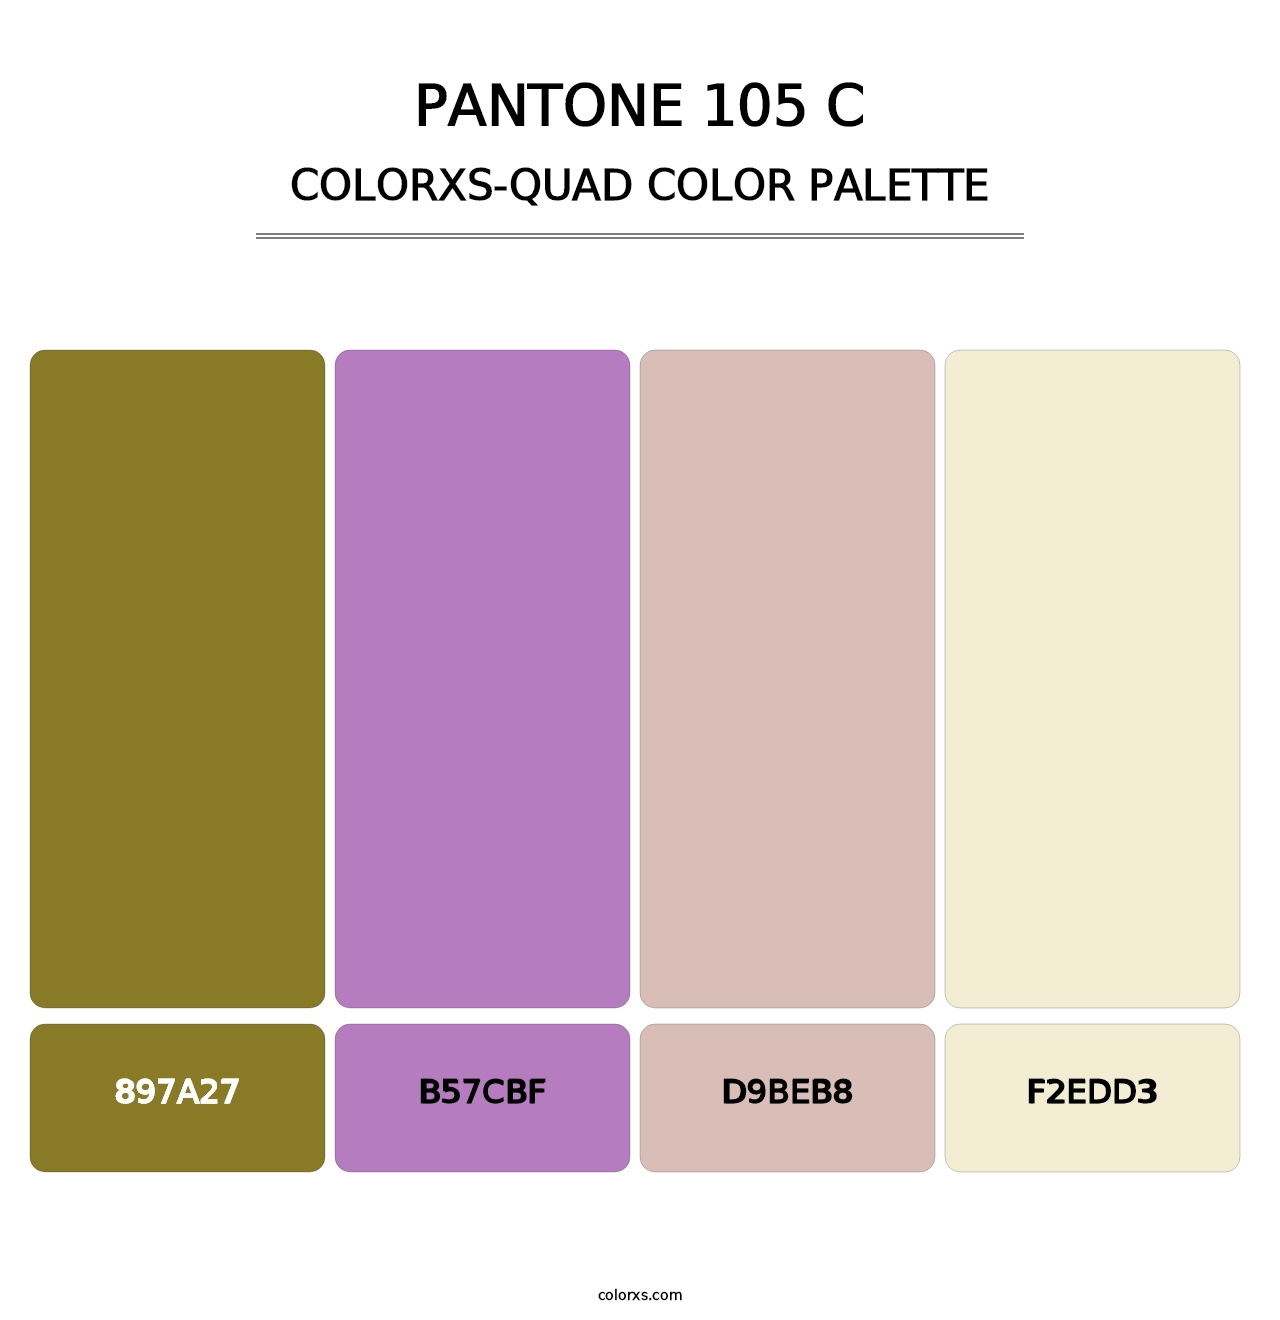 PANTONE 105 C - Colorxs Quad Palette